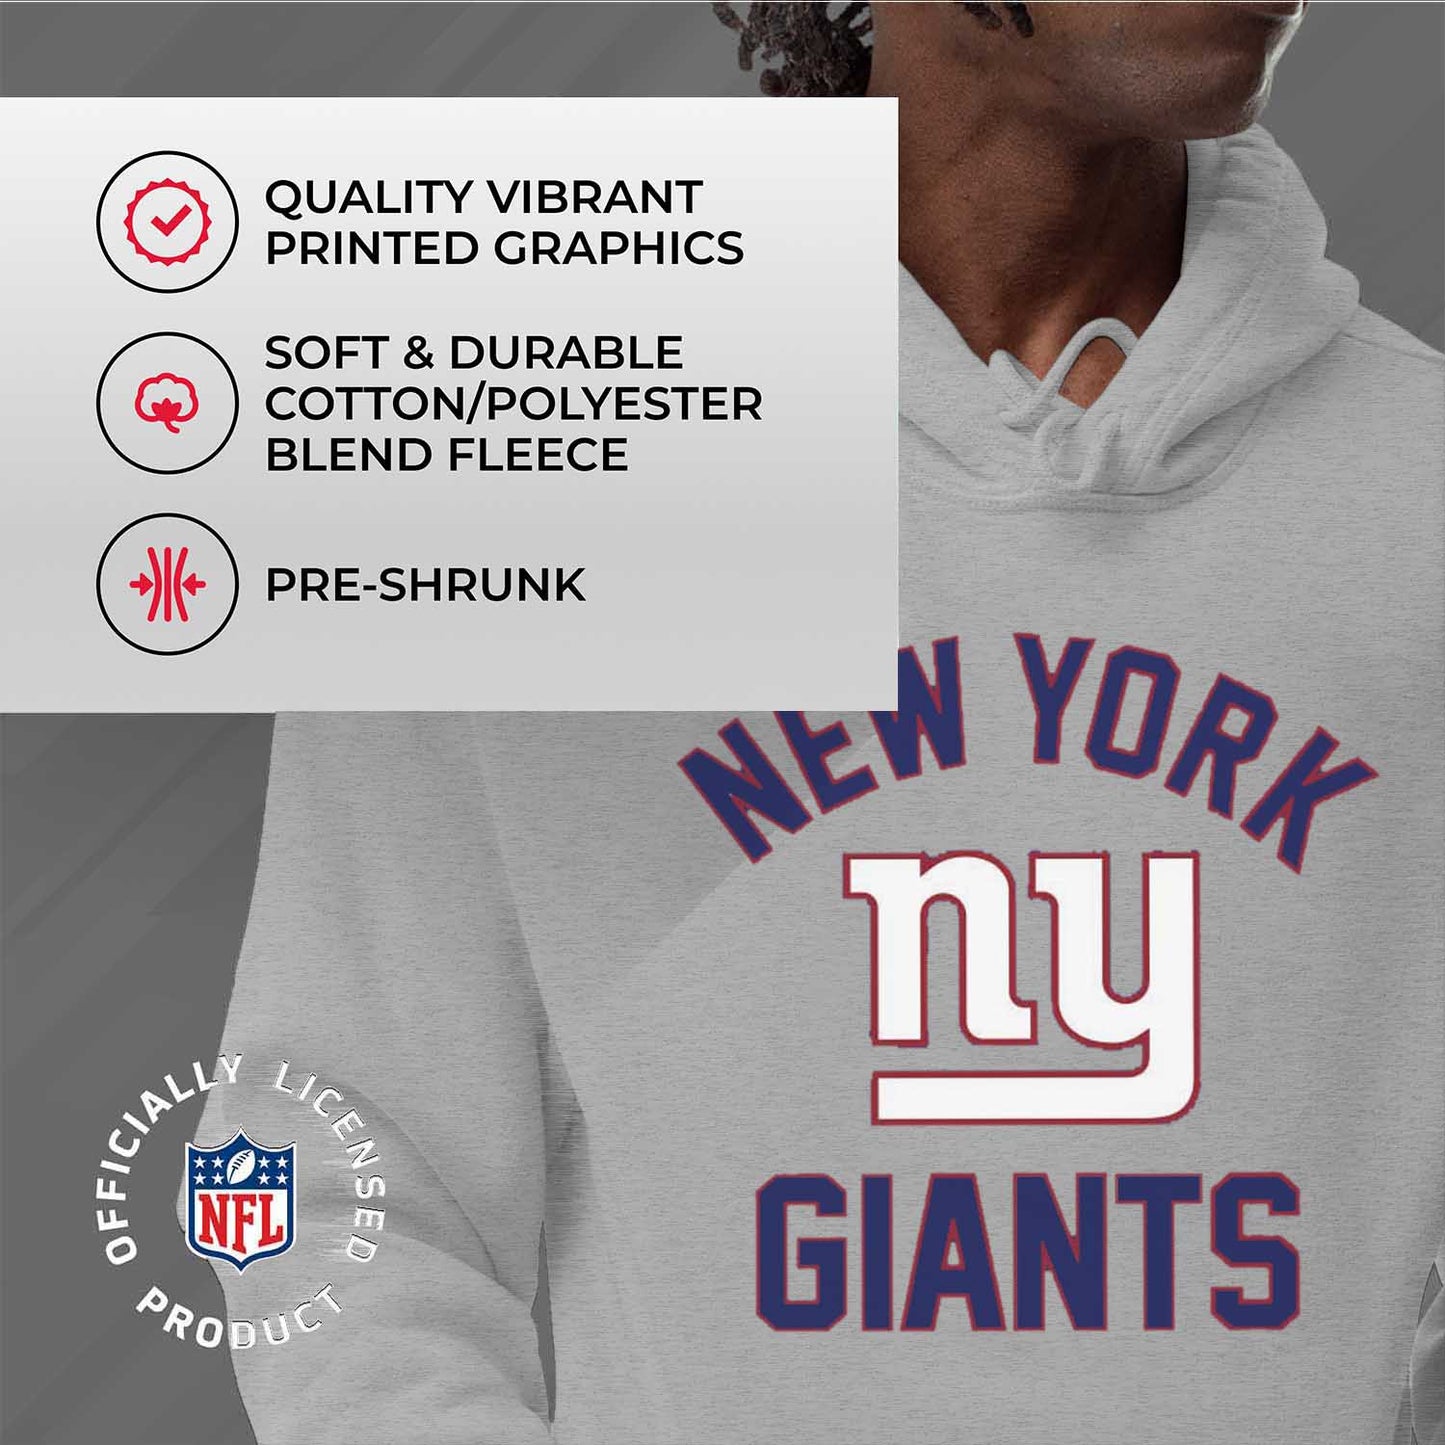 New York Giants NFL Adult Gameday Hooded Sweatshirt - Sport Gray